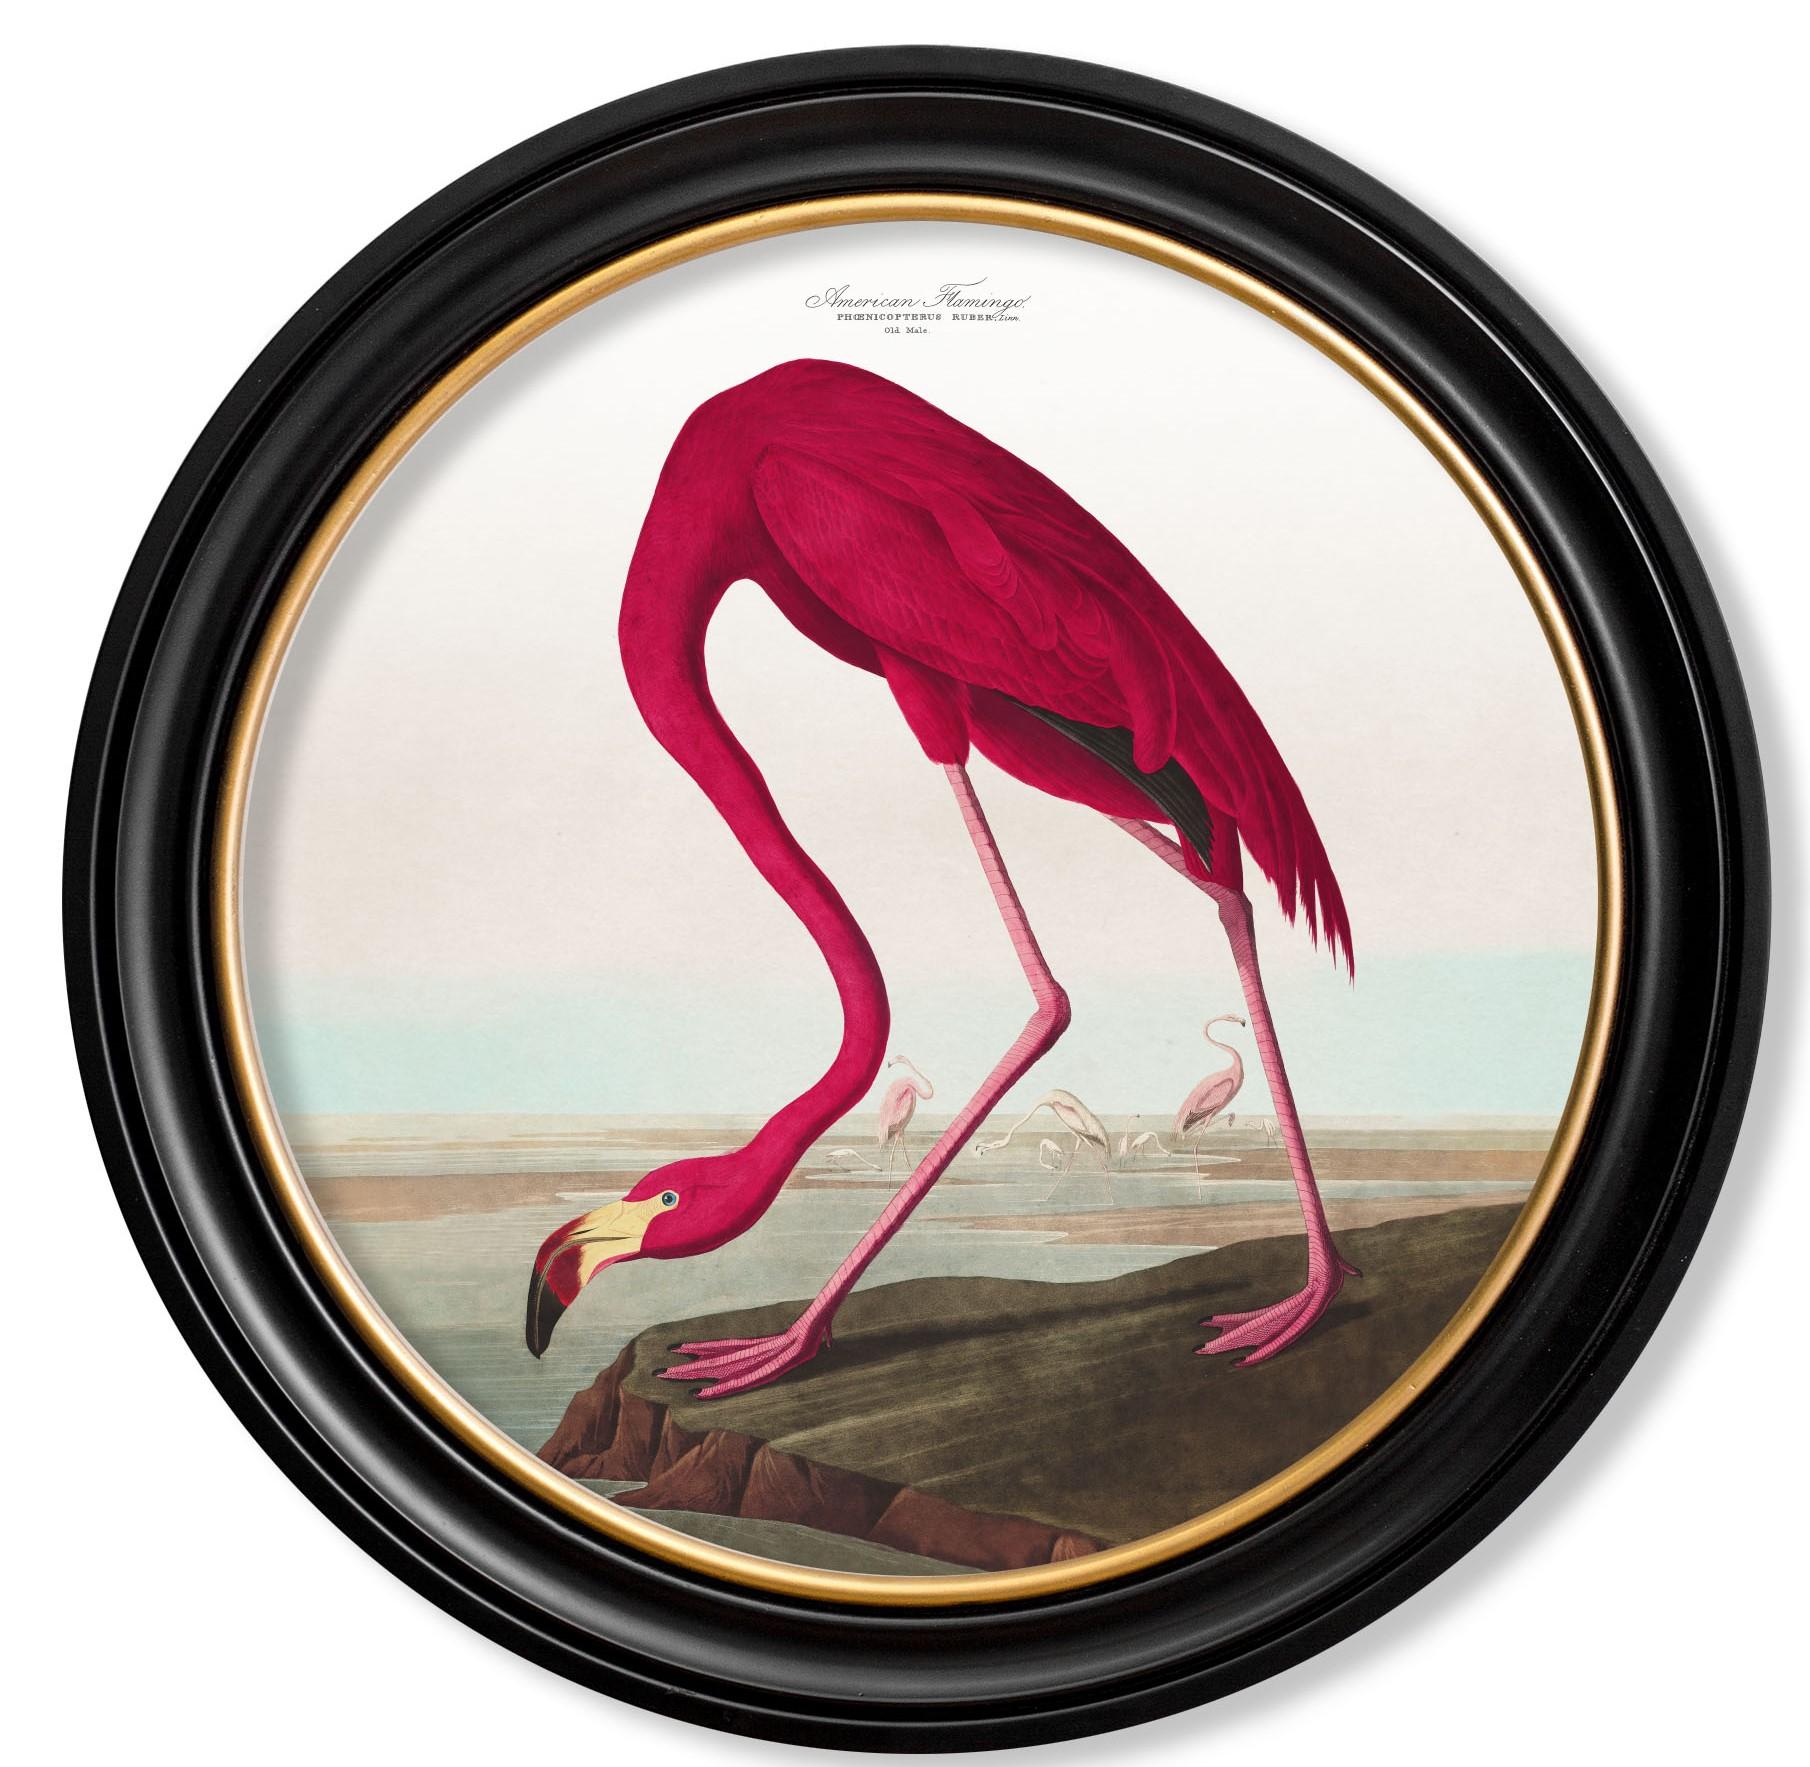 Dies ist ein digital überarbeiteter Druck eines Flamingos, der von einem Audubon stammt.
Birds of America handkolorierter Druck, ursprünglich aus den 1800er Jahren.

Drucke dieses Stils wurden ursprünglich in Schwarz-Weiß gedruckt und dann von